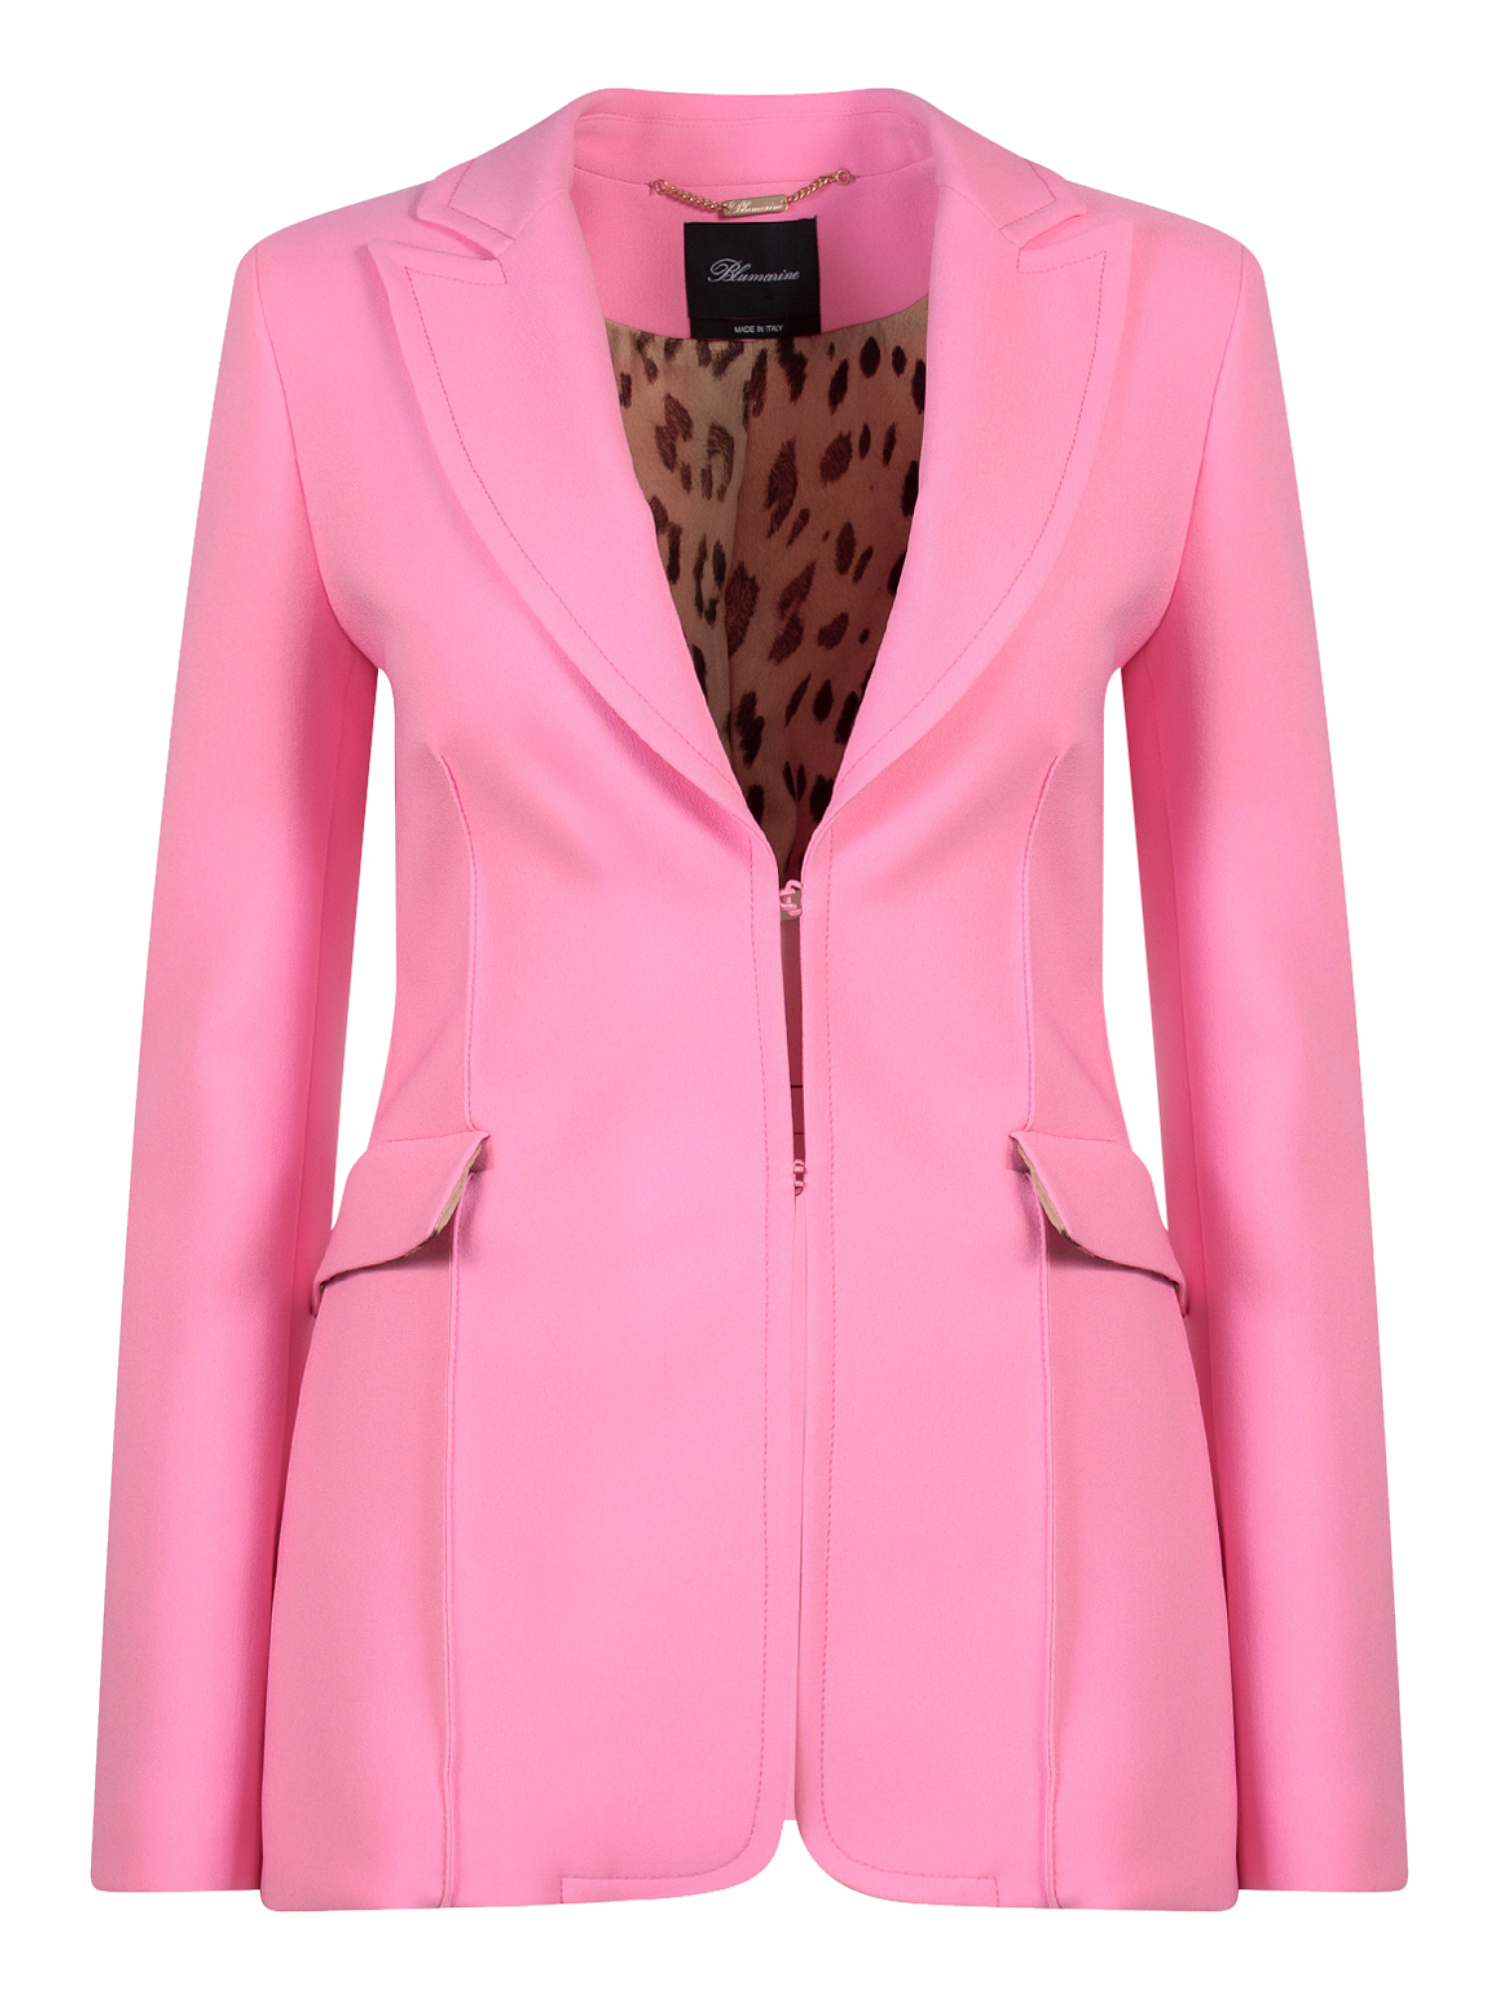 Vestes Pour Femme - Blumarine - En Synthetic Fibers Pink - Taille:  -